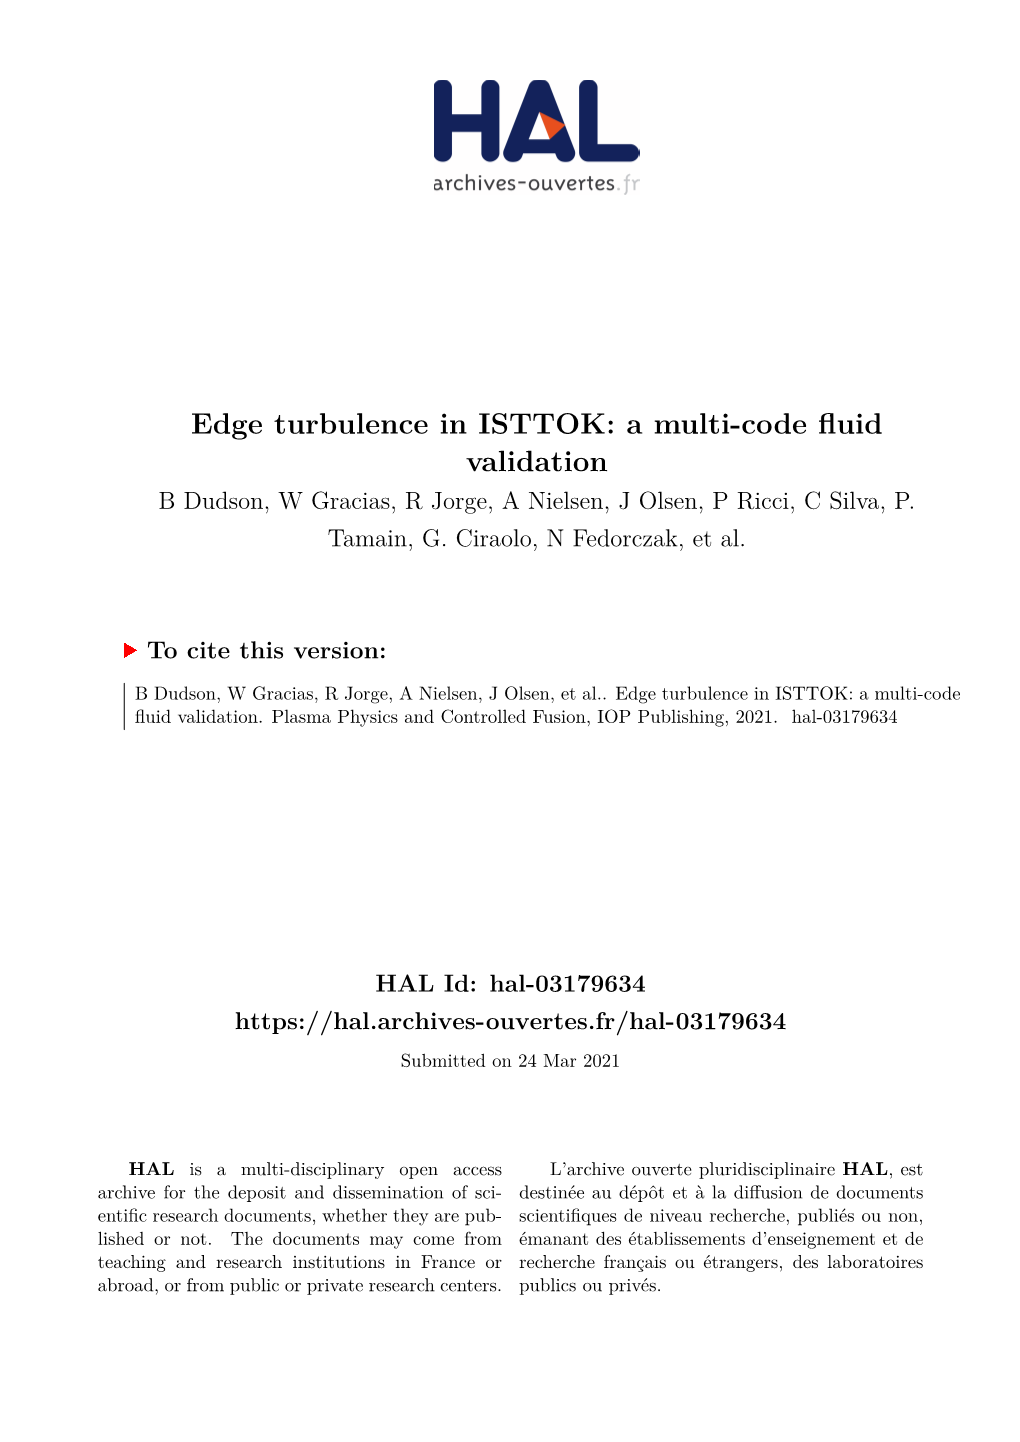 Edge Turbulence in ISTTOK: a Multi-Code Fluid Validation B Dudson, W Gracias, R Jorge, a Nielsen, J Olsen, P Ricci, C Silva, P